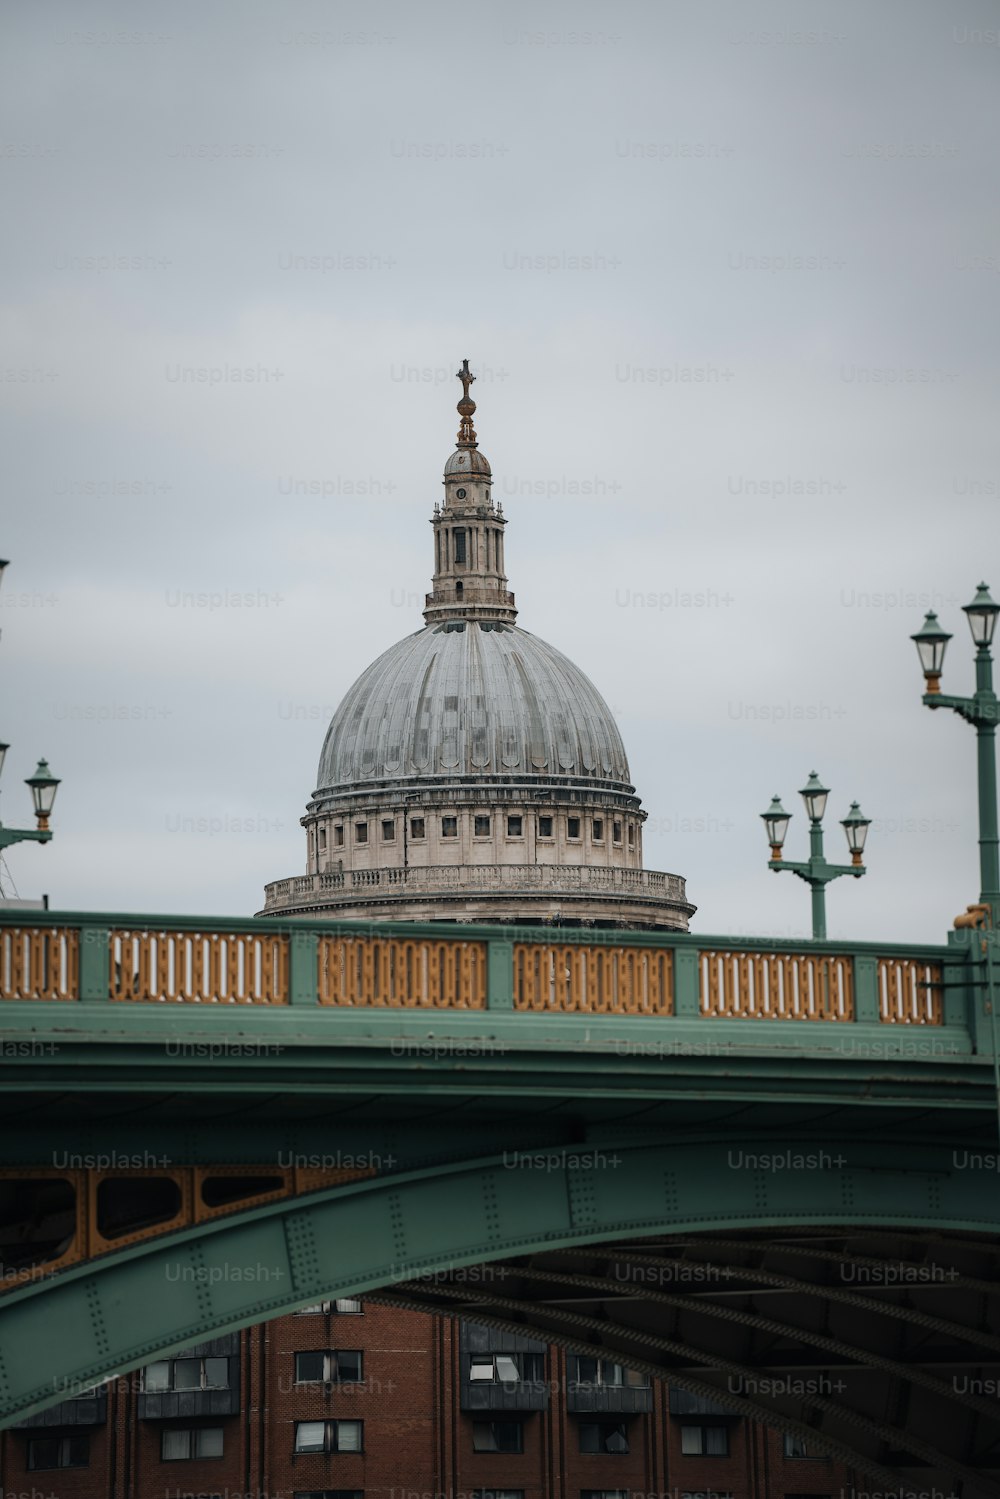 La cupola di un edificio è vista dall'altra parte di un ponte